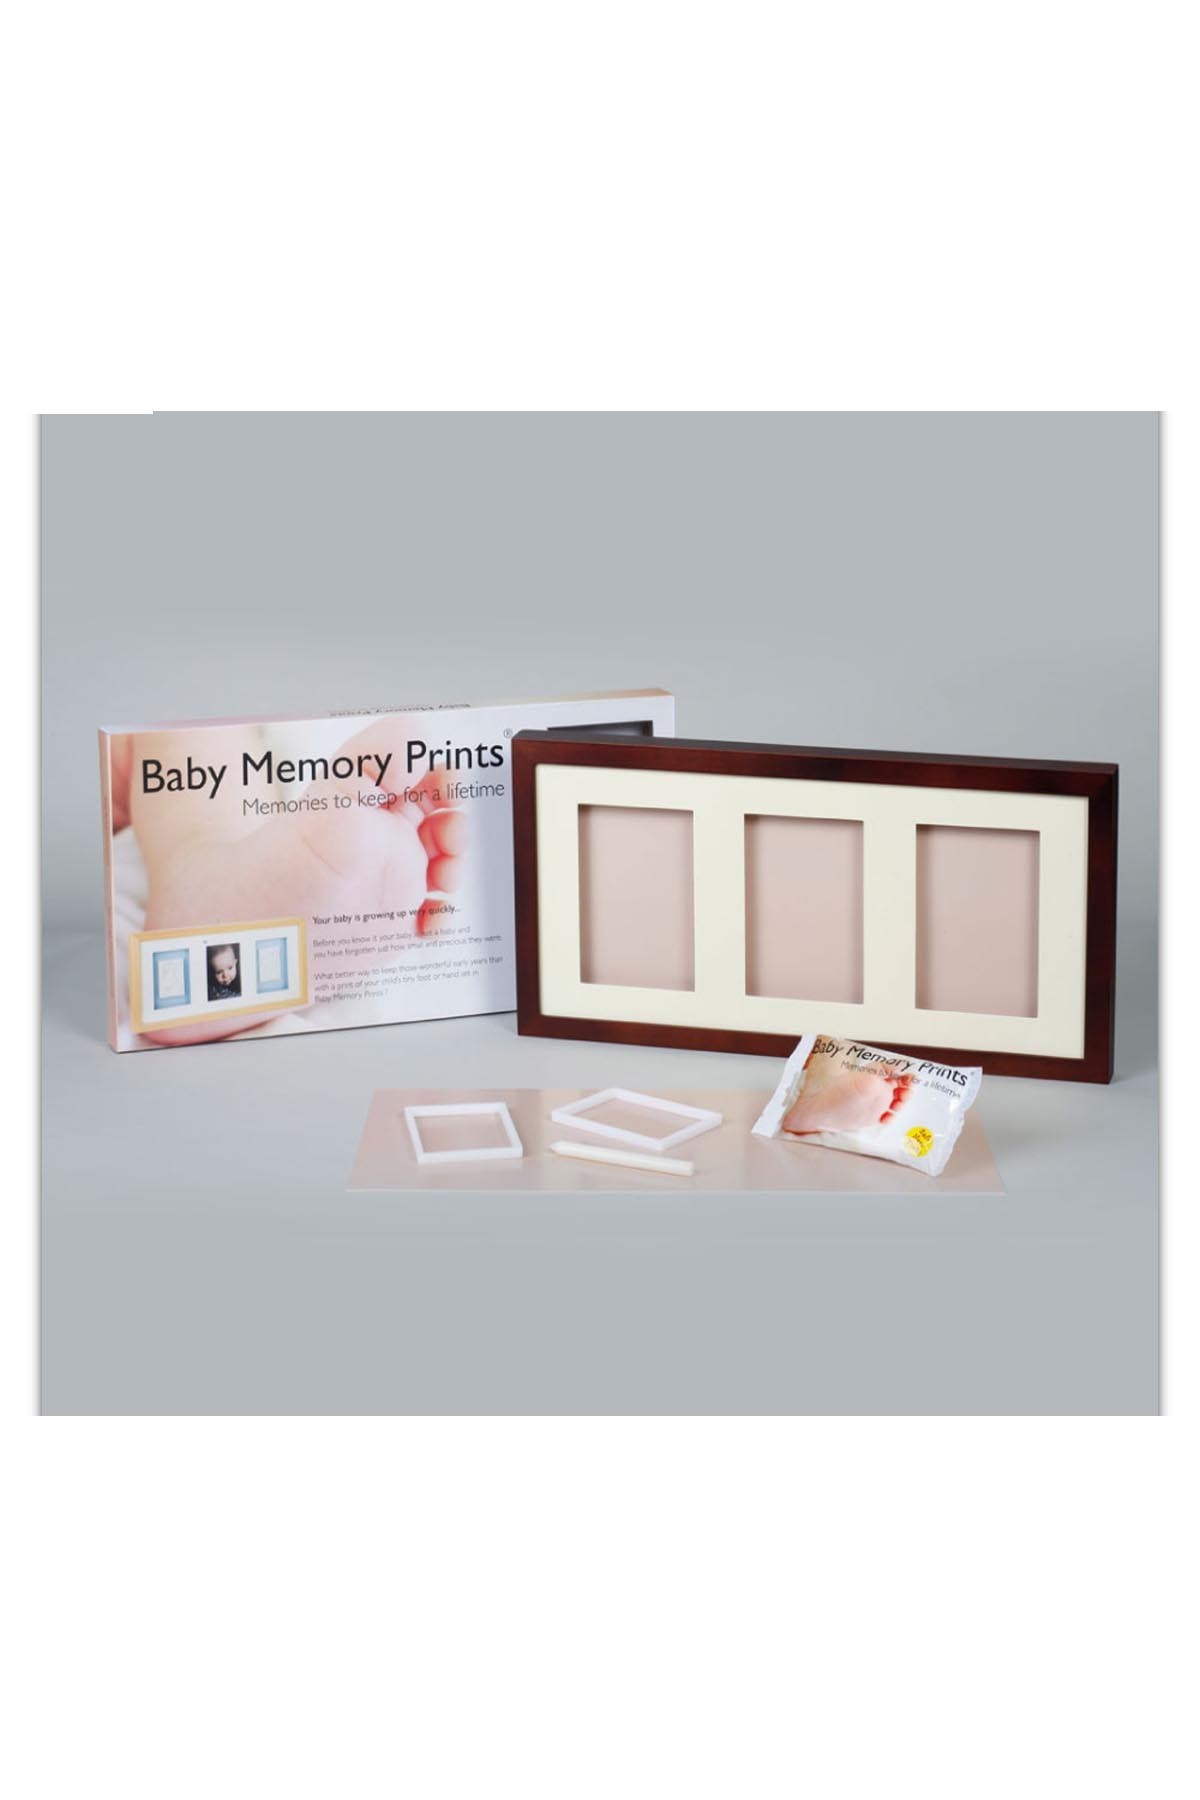 Baby Memory Prints Üçlü Çerçeve Frame Ceviz